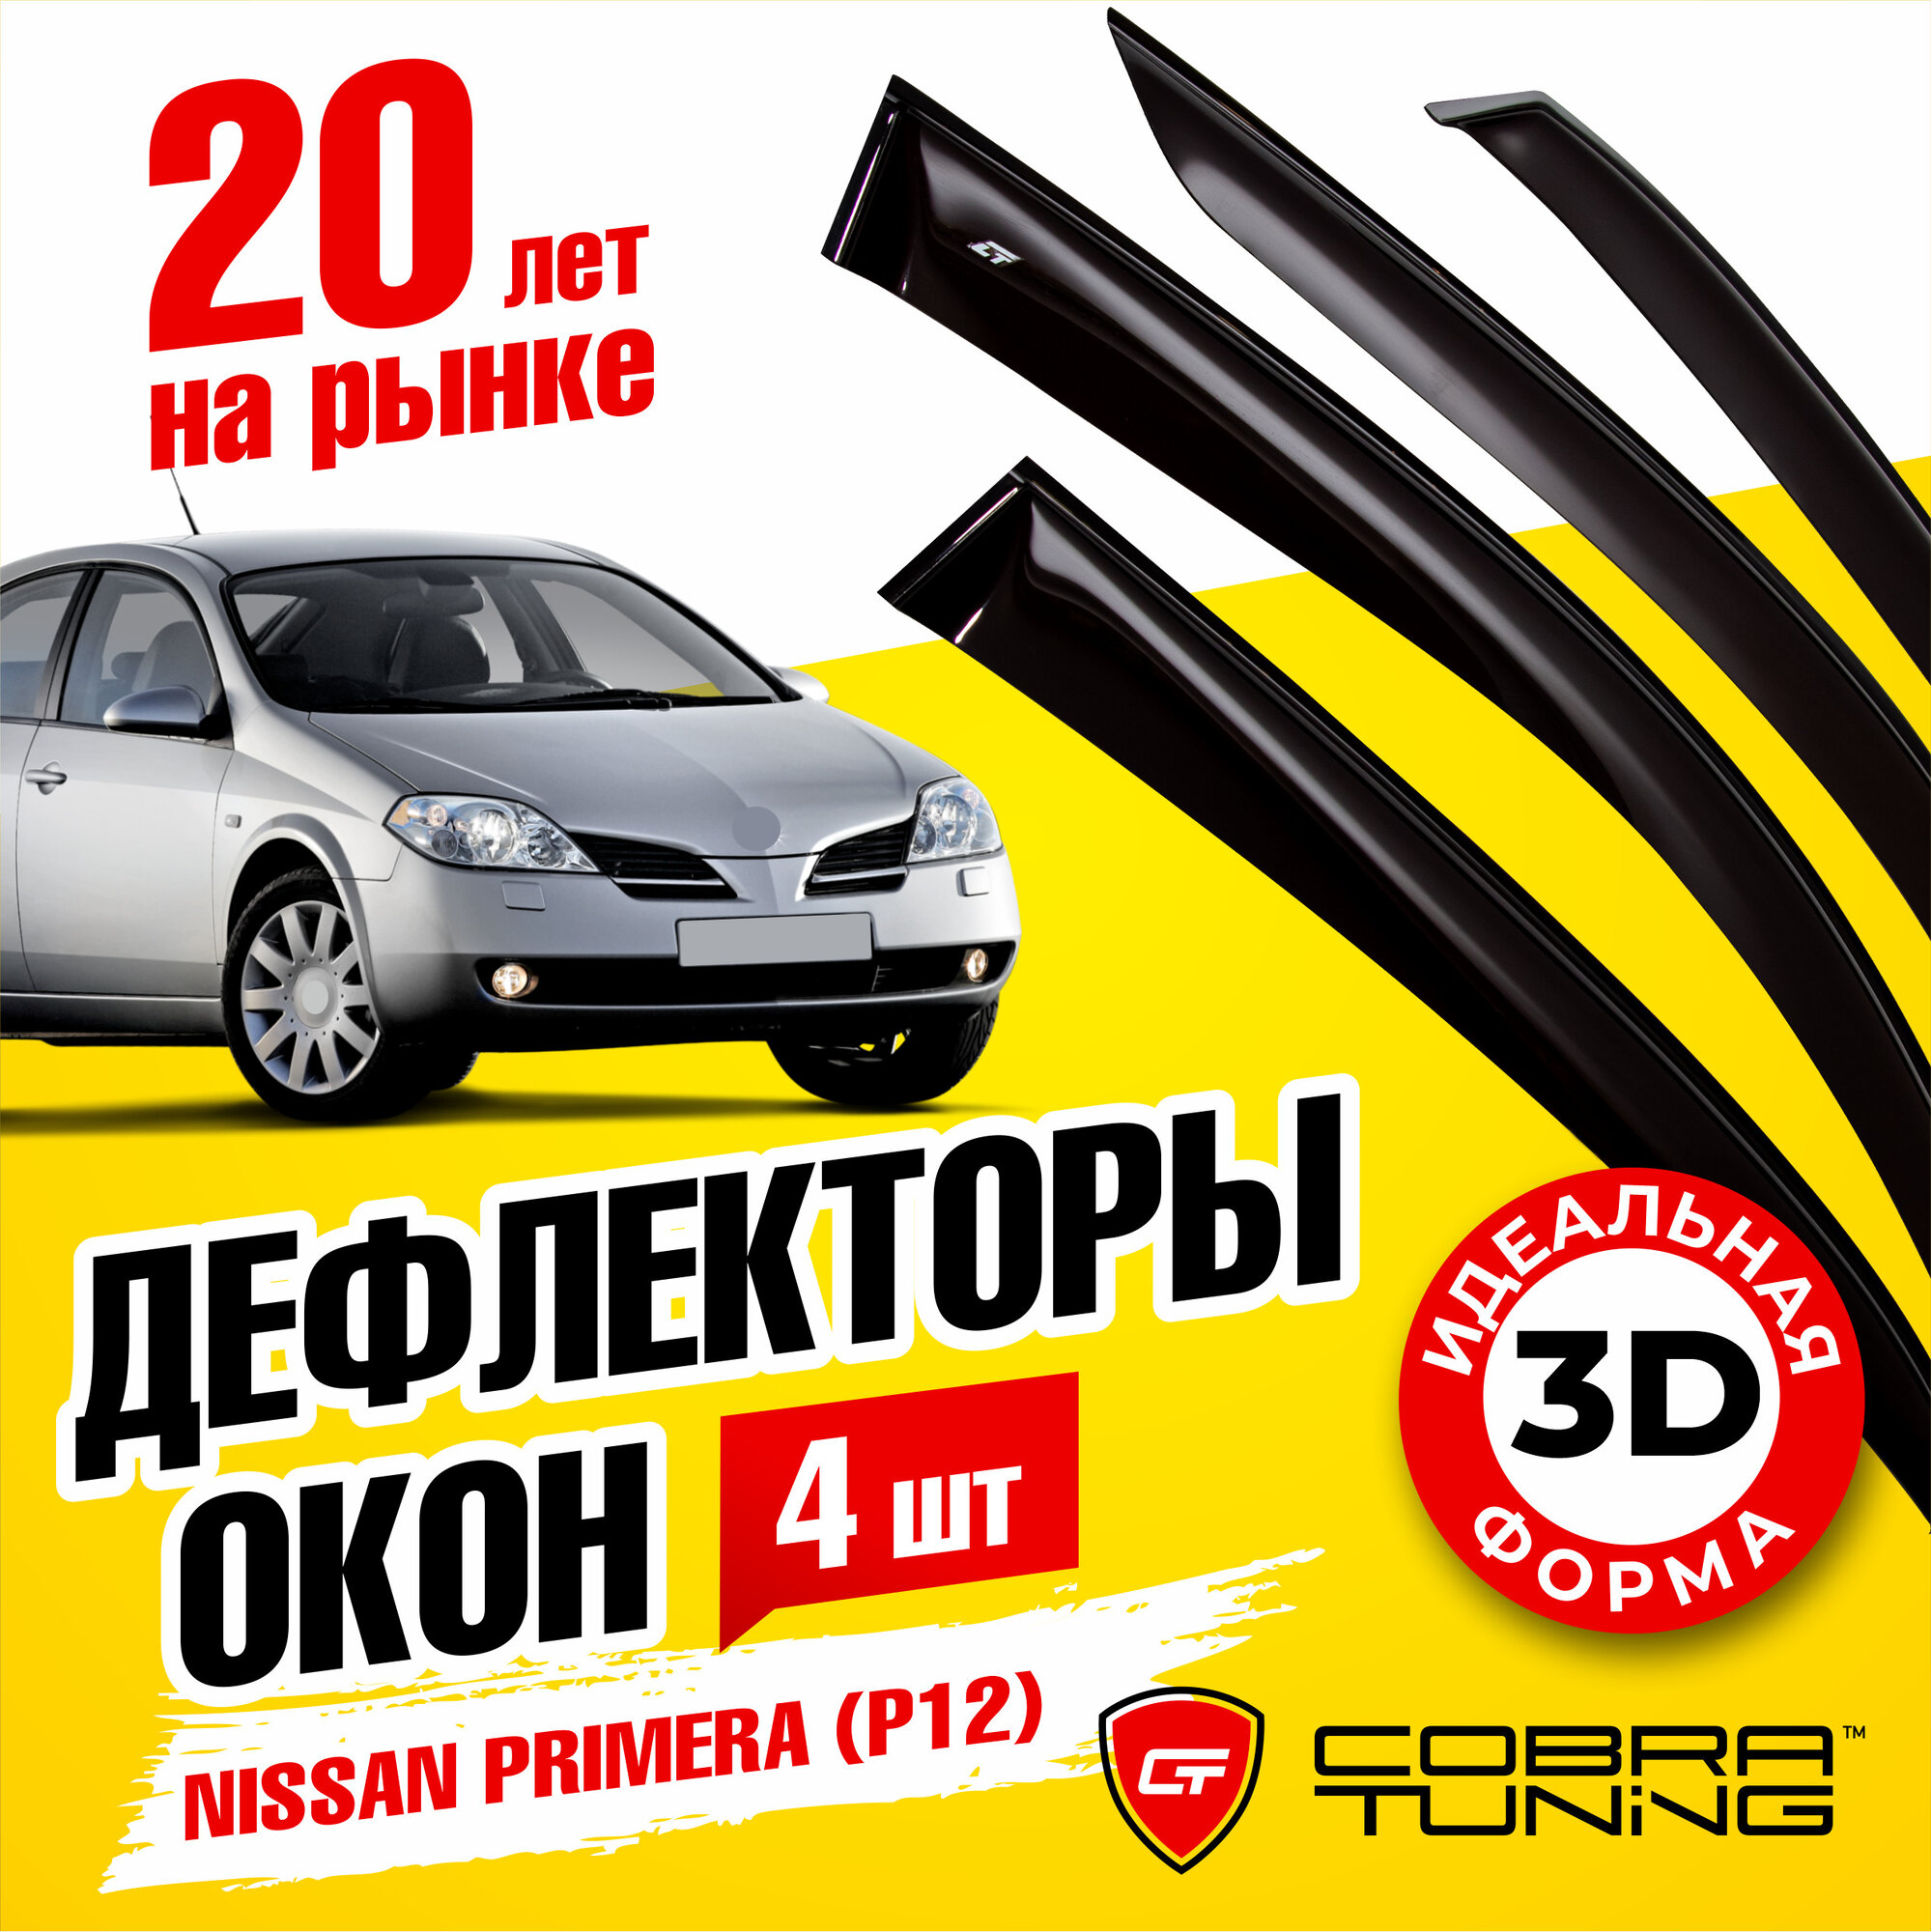 Дефлекторы боковых окон для Nissan Primera (Ниссан Примера) седан лифтбек (P12) 2002-2008 ветровики на двери автомобиля Cobra Tuning